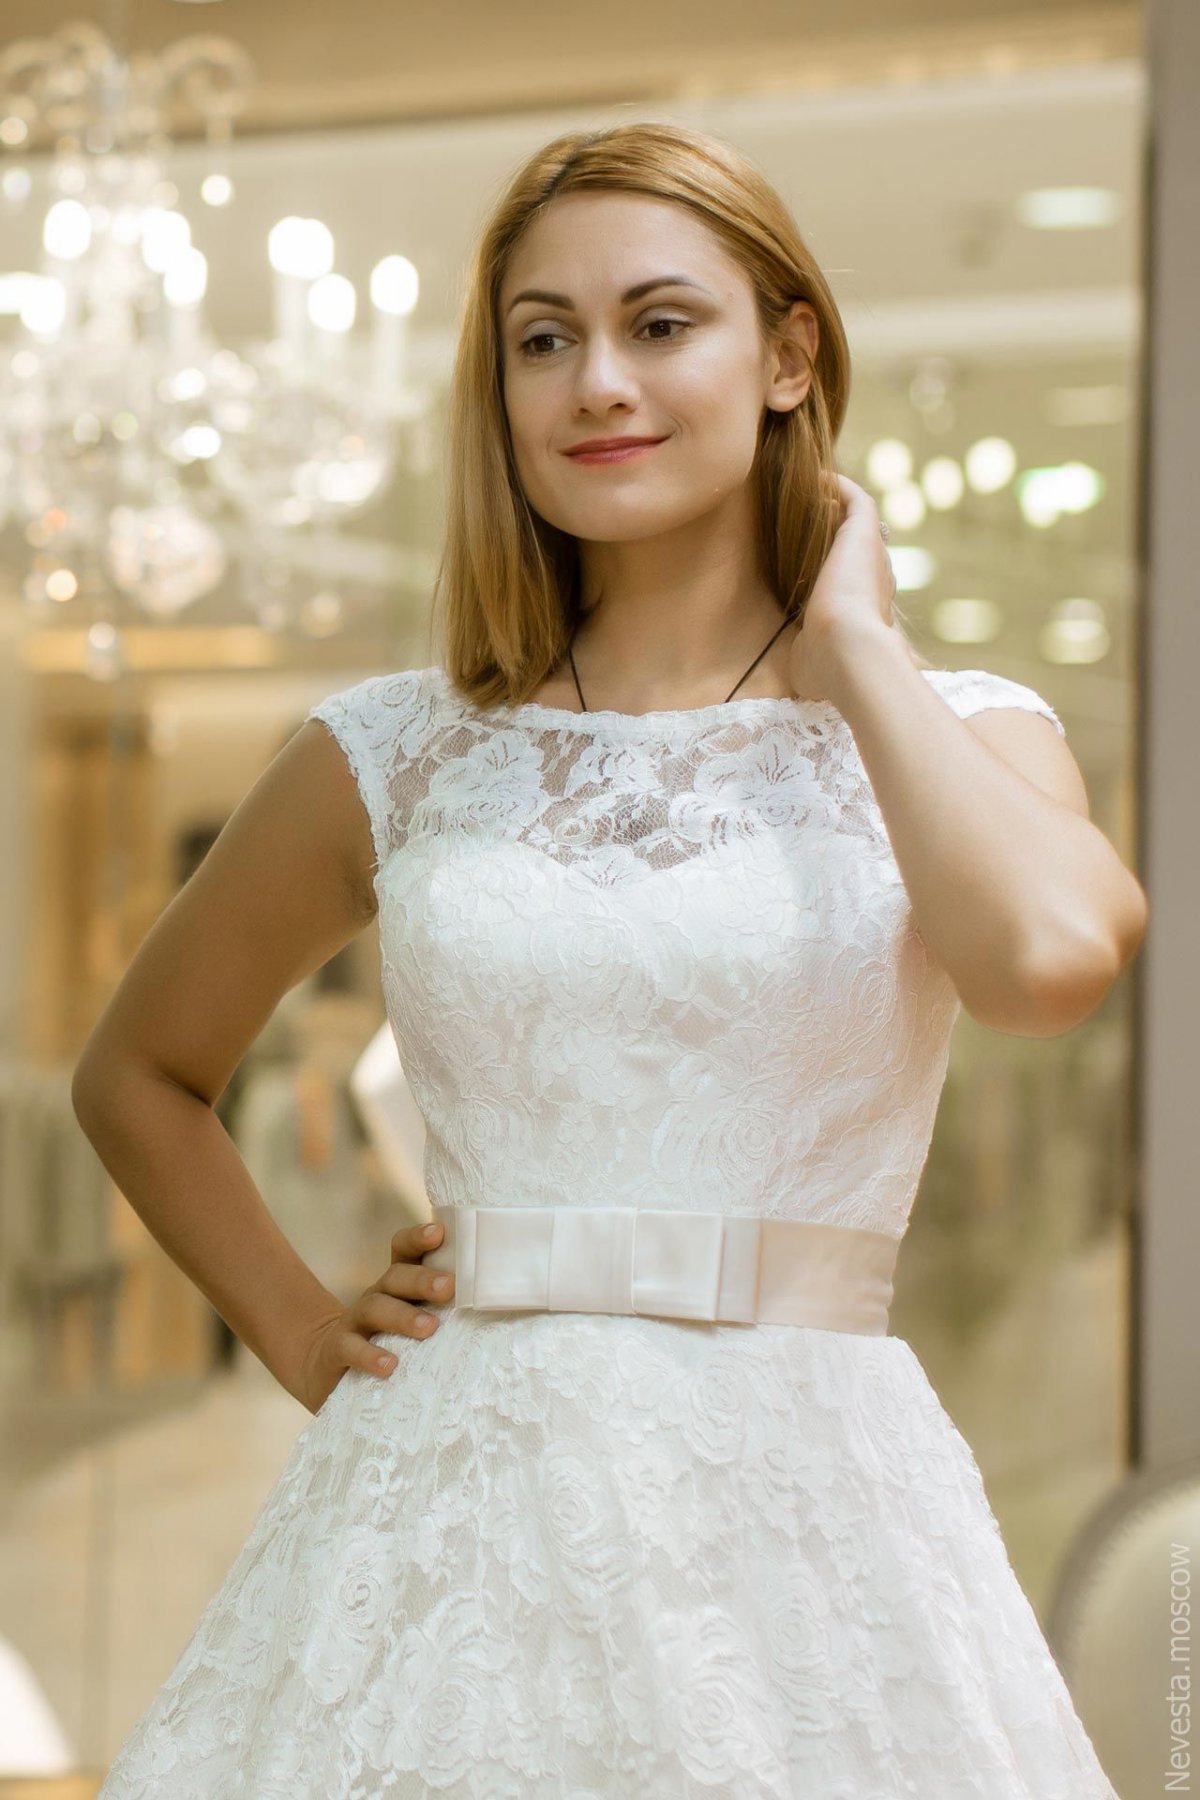 Карина Мишулина примеряет свадебное платье, фото 2